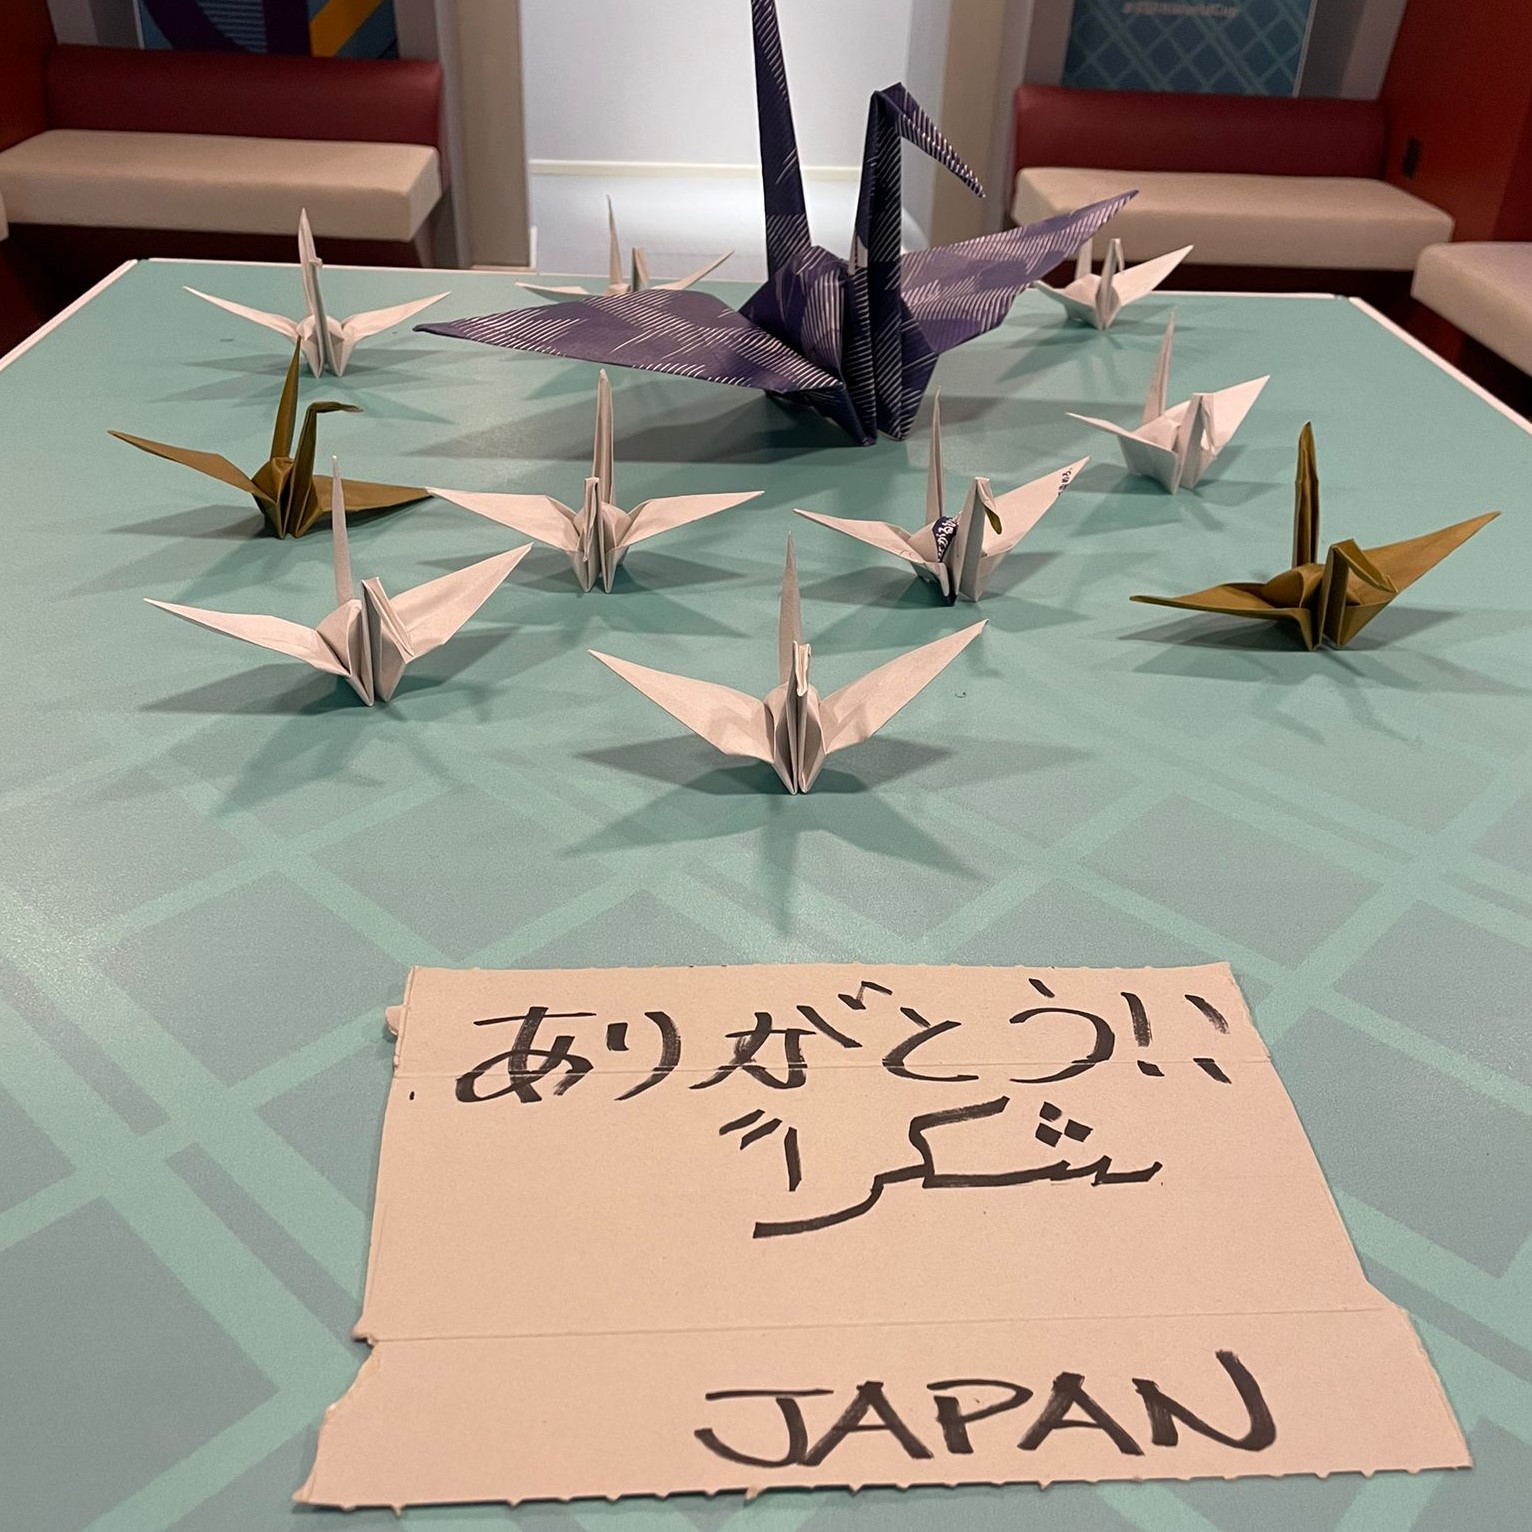 日本队更衣室的桌面（社交媒体截图）